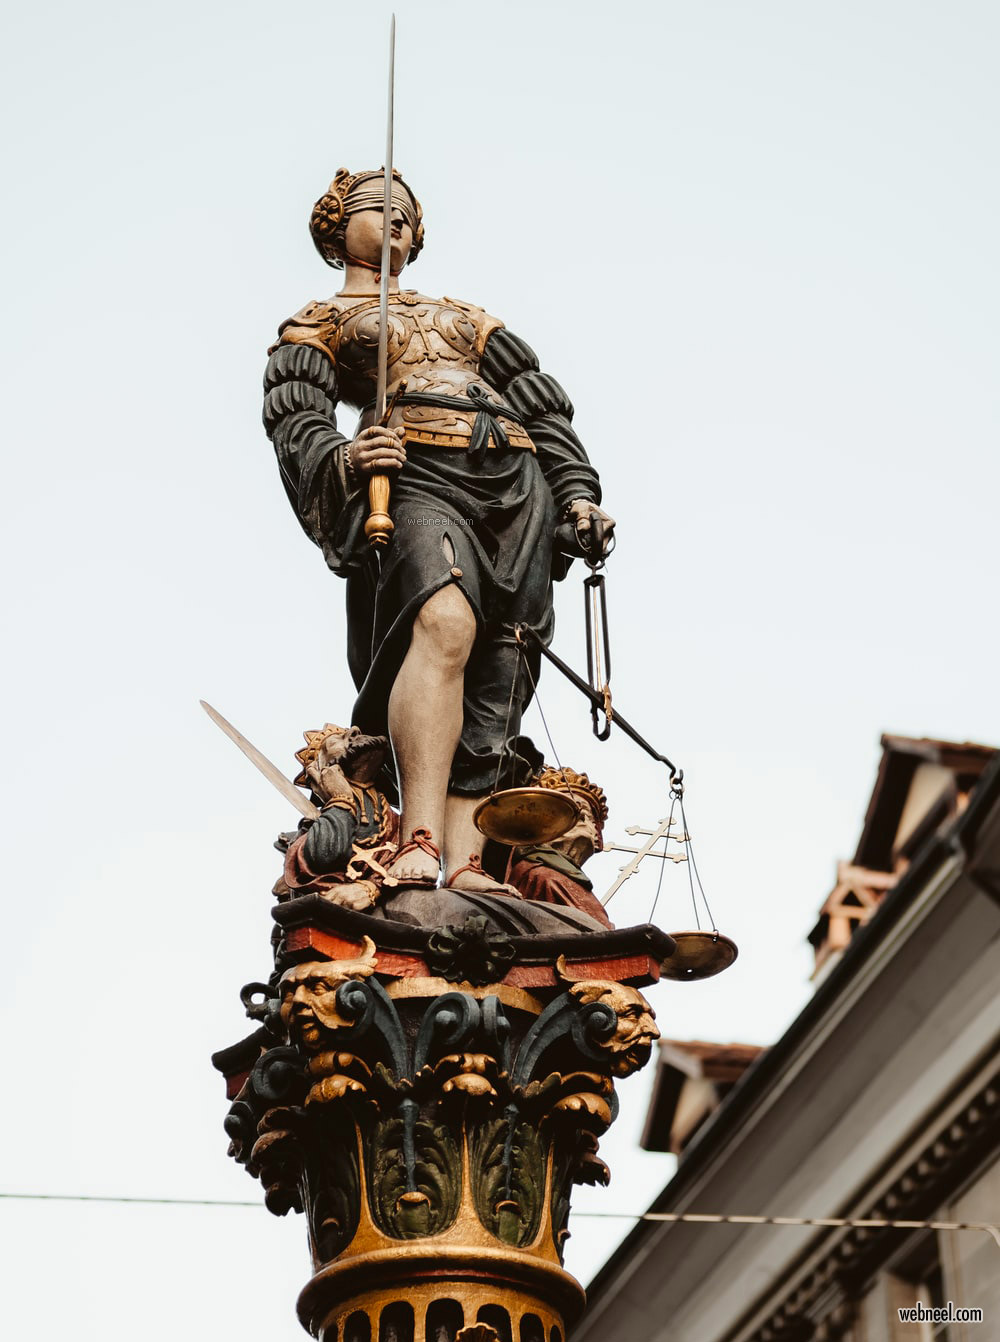 full round sculpture depicting justice